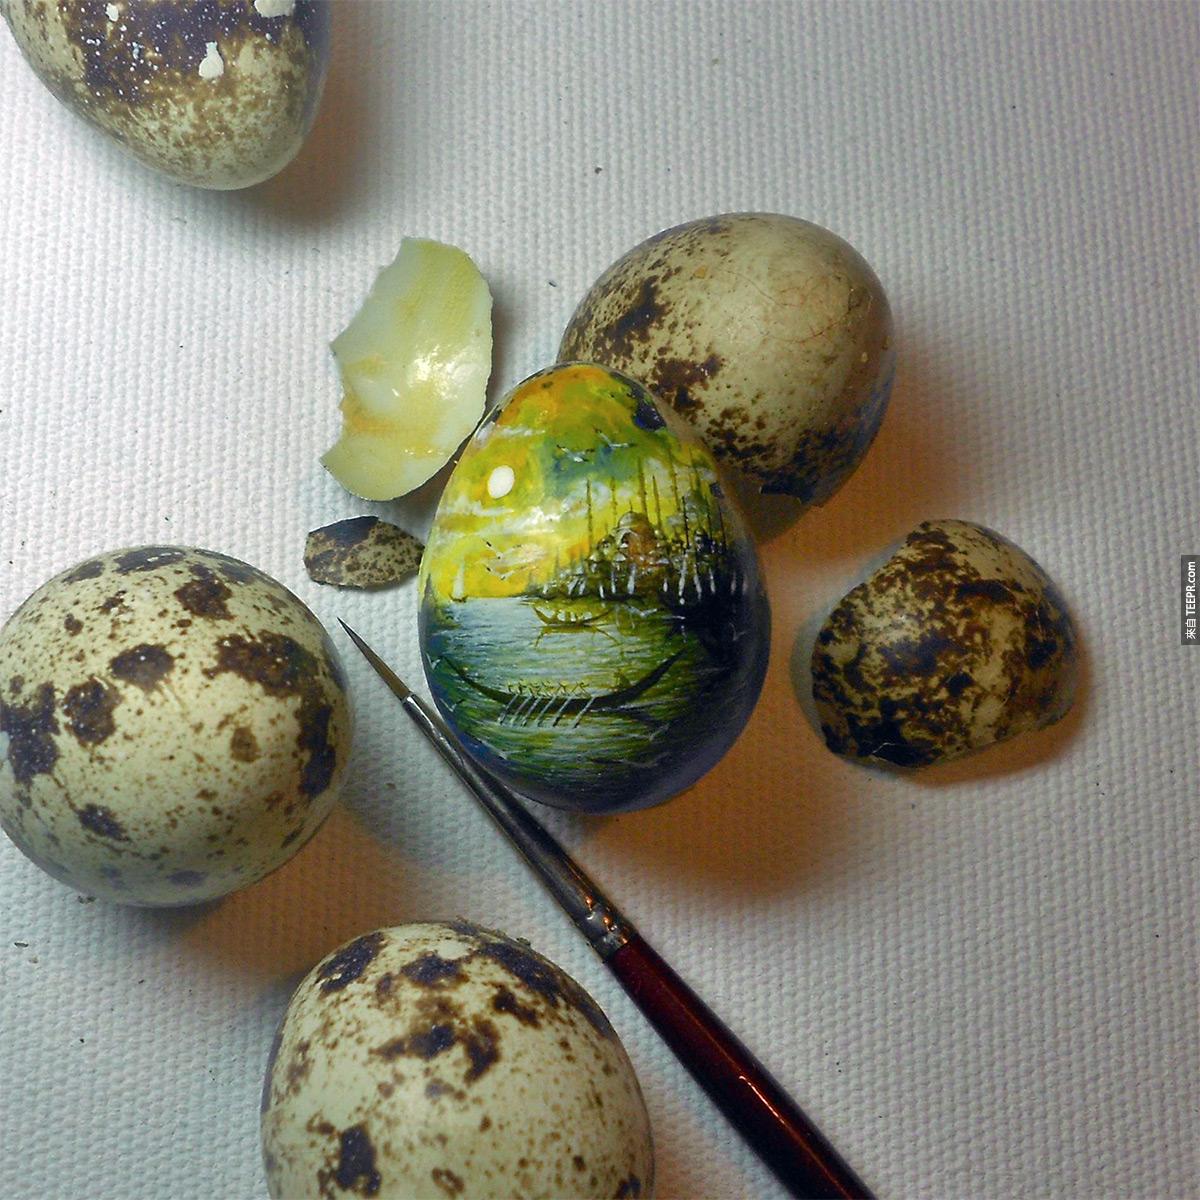 6.) Egg